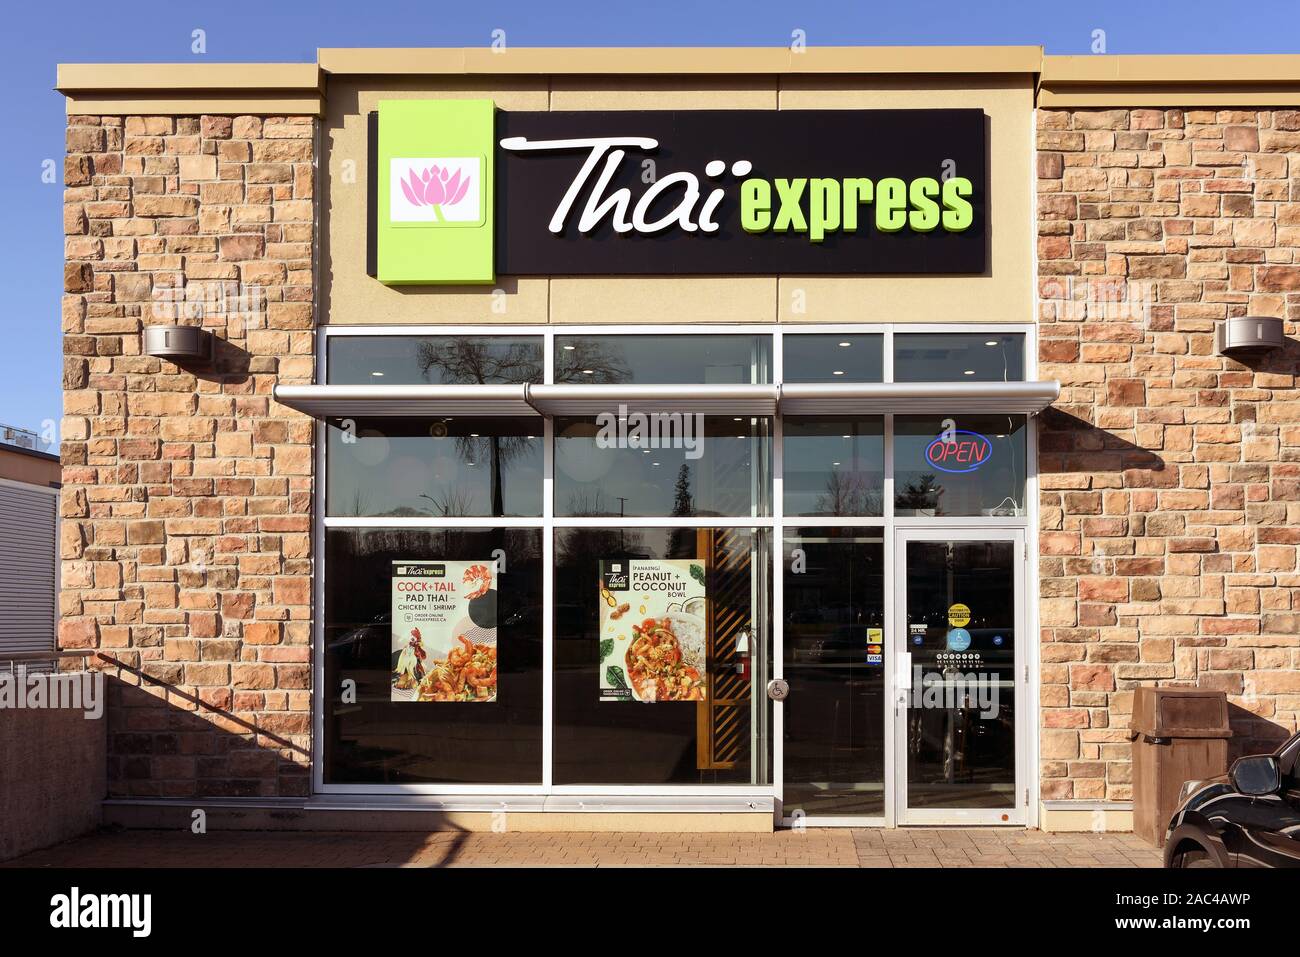 Ottawa, Kanada - 24. November 2019: Thai Express, einem kanadischen Franchise Fast Food Kette, thailändische Küche in mehreren Ländern dient, auf der Richmond Roa Stockfoto